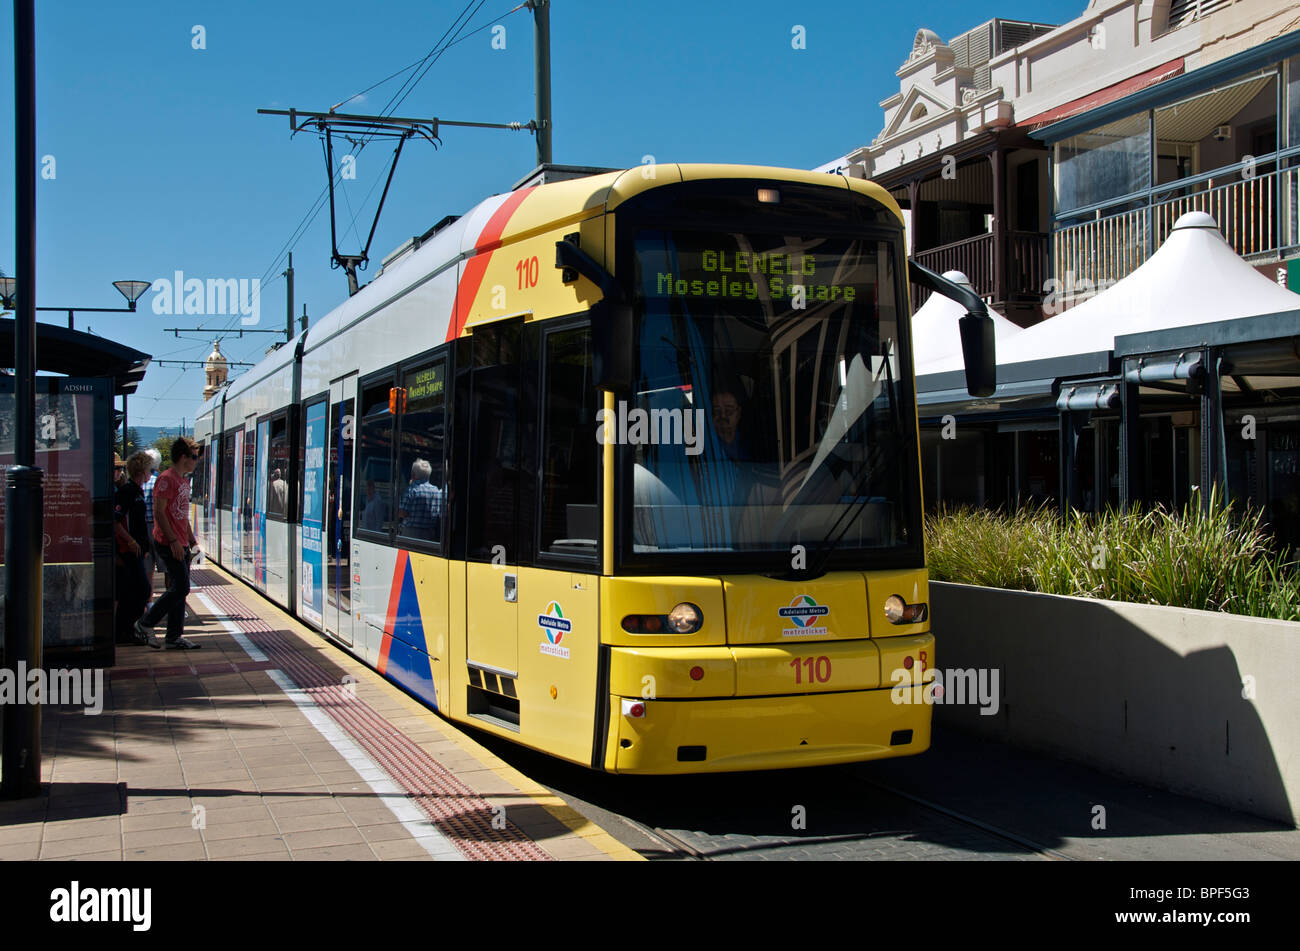 Le Tram tire en terminus à Moseley Square Adelaide Glenelg, Australie du Sud Banque D'Images